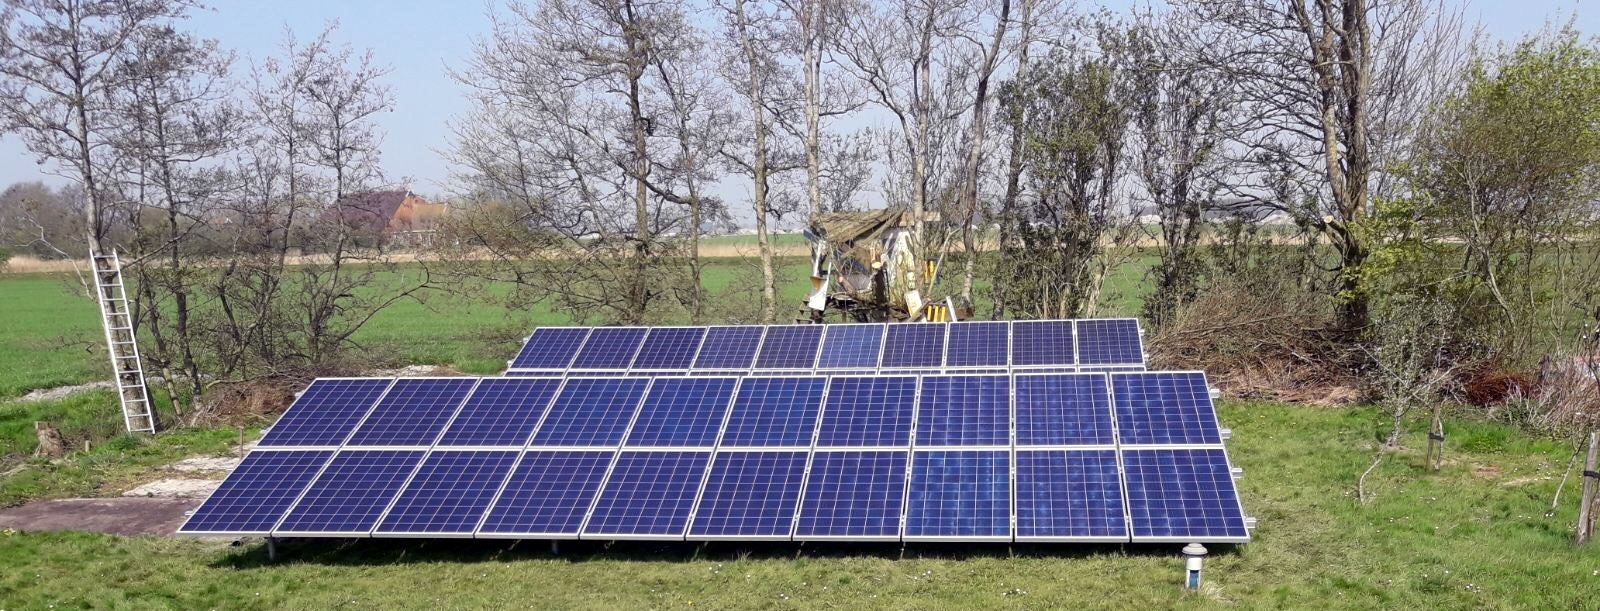 Ongekend Woning Ried | Installeren 40 zonnepanelen - vrije veld opstelling OU-45